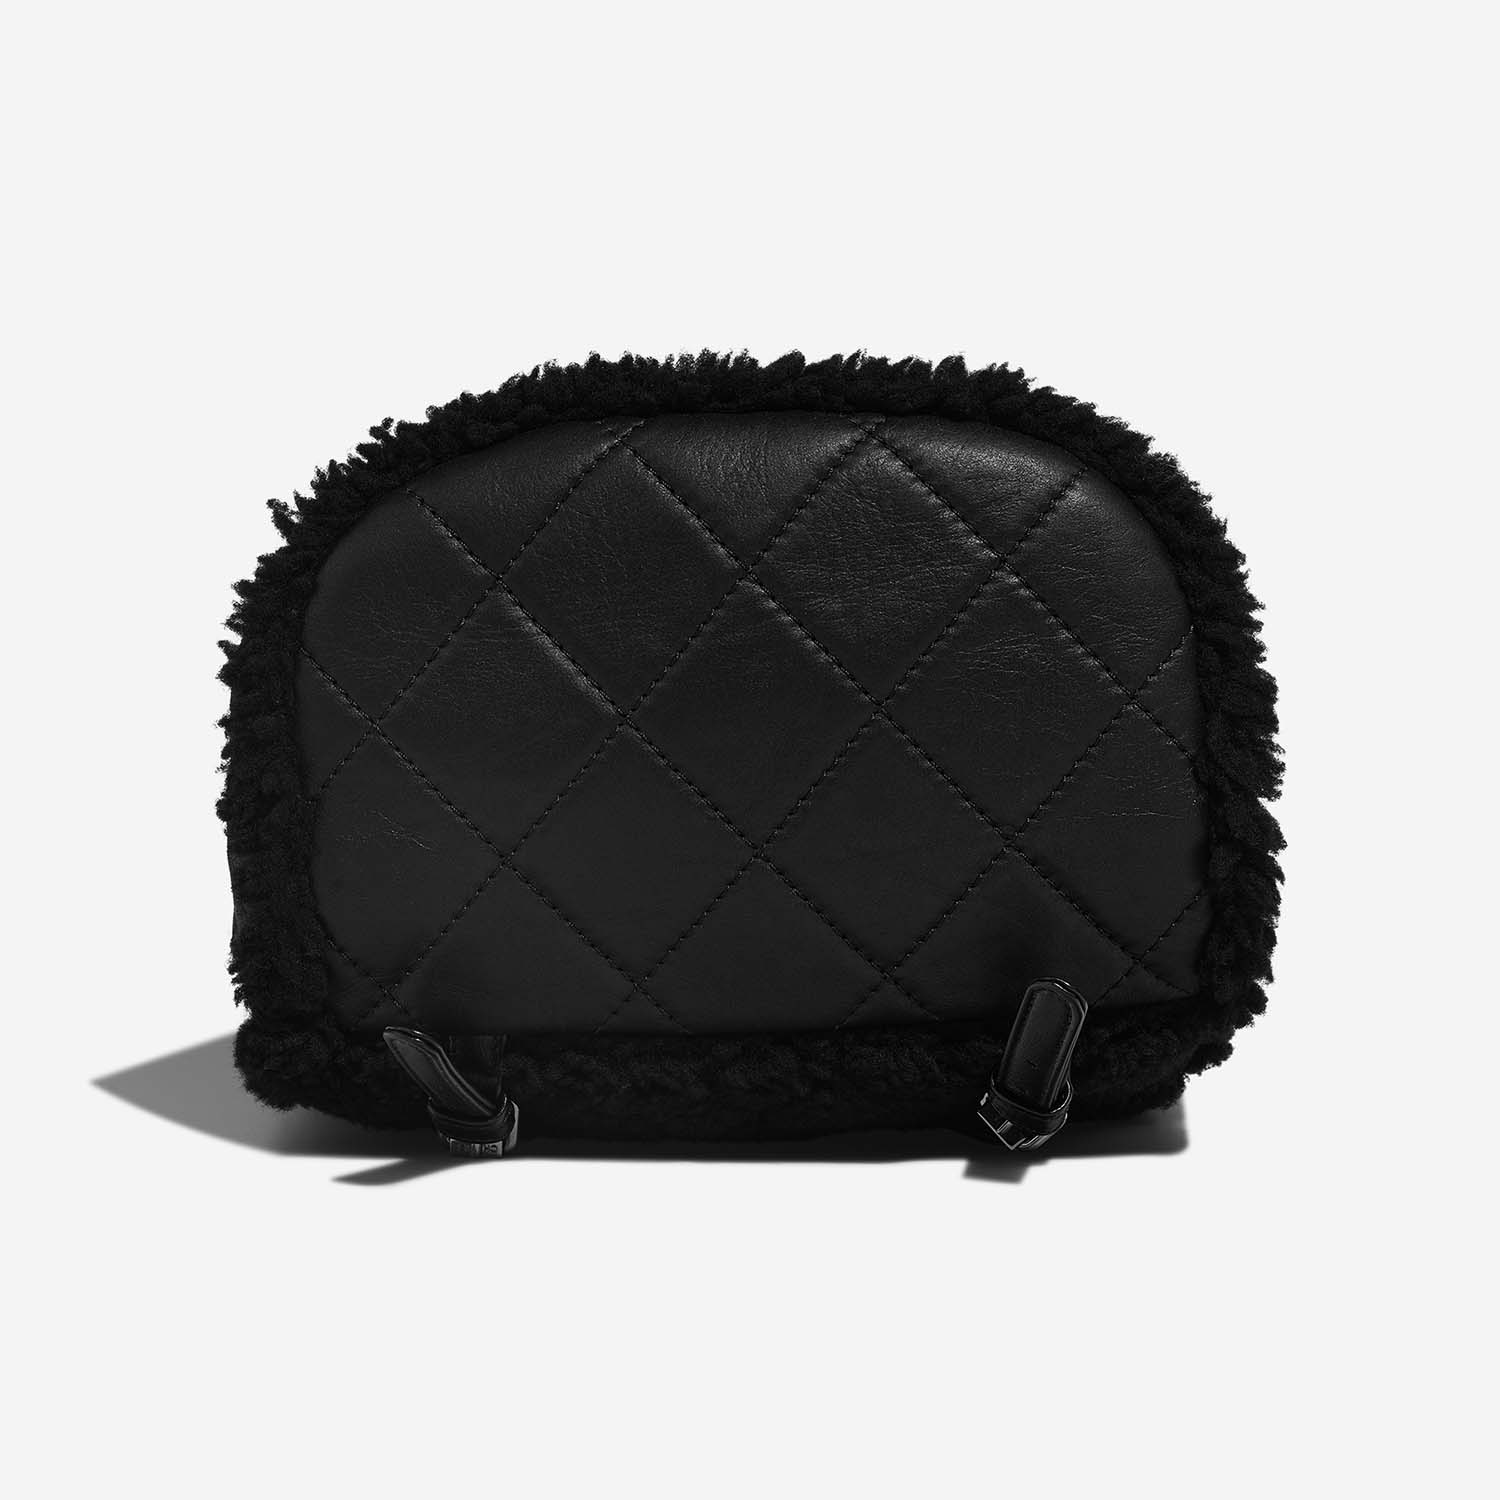 Chanel Backpack Black Bottom | Sell your designer bag on Saclab.com